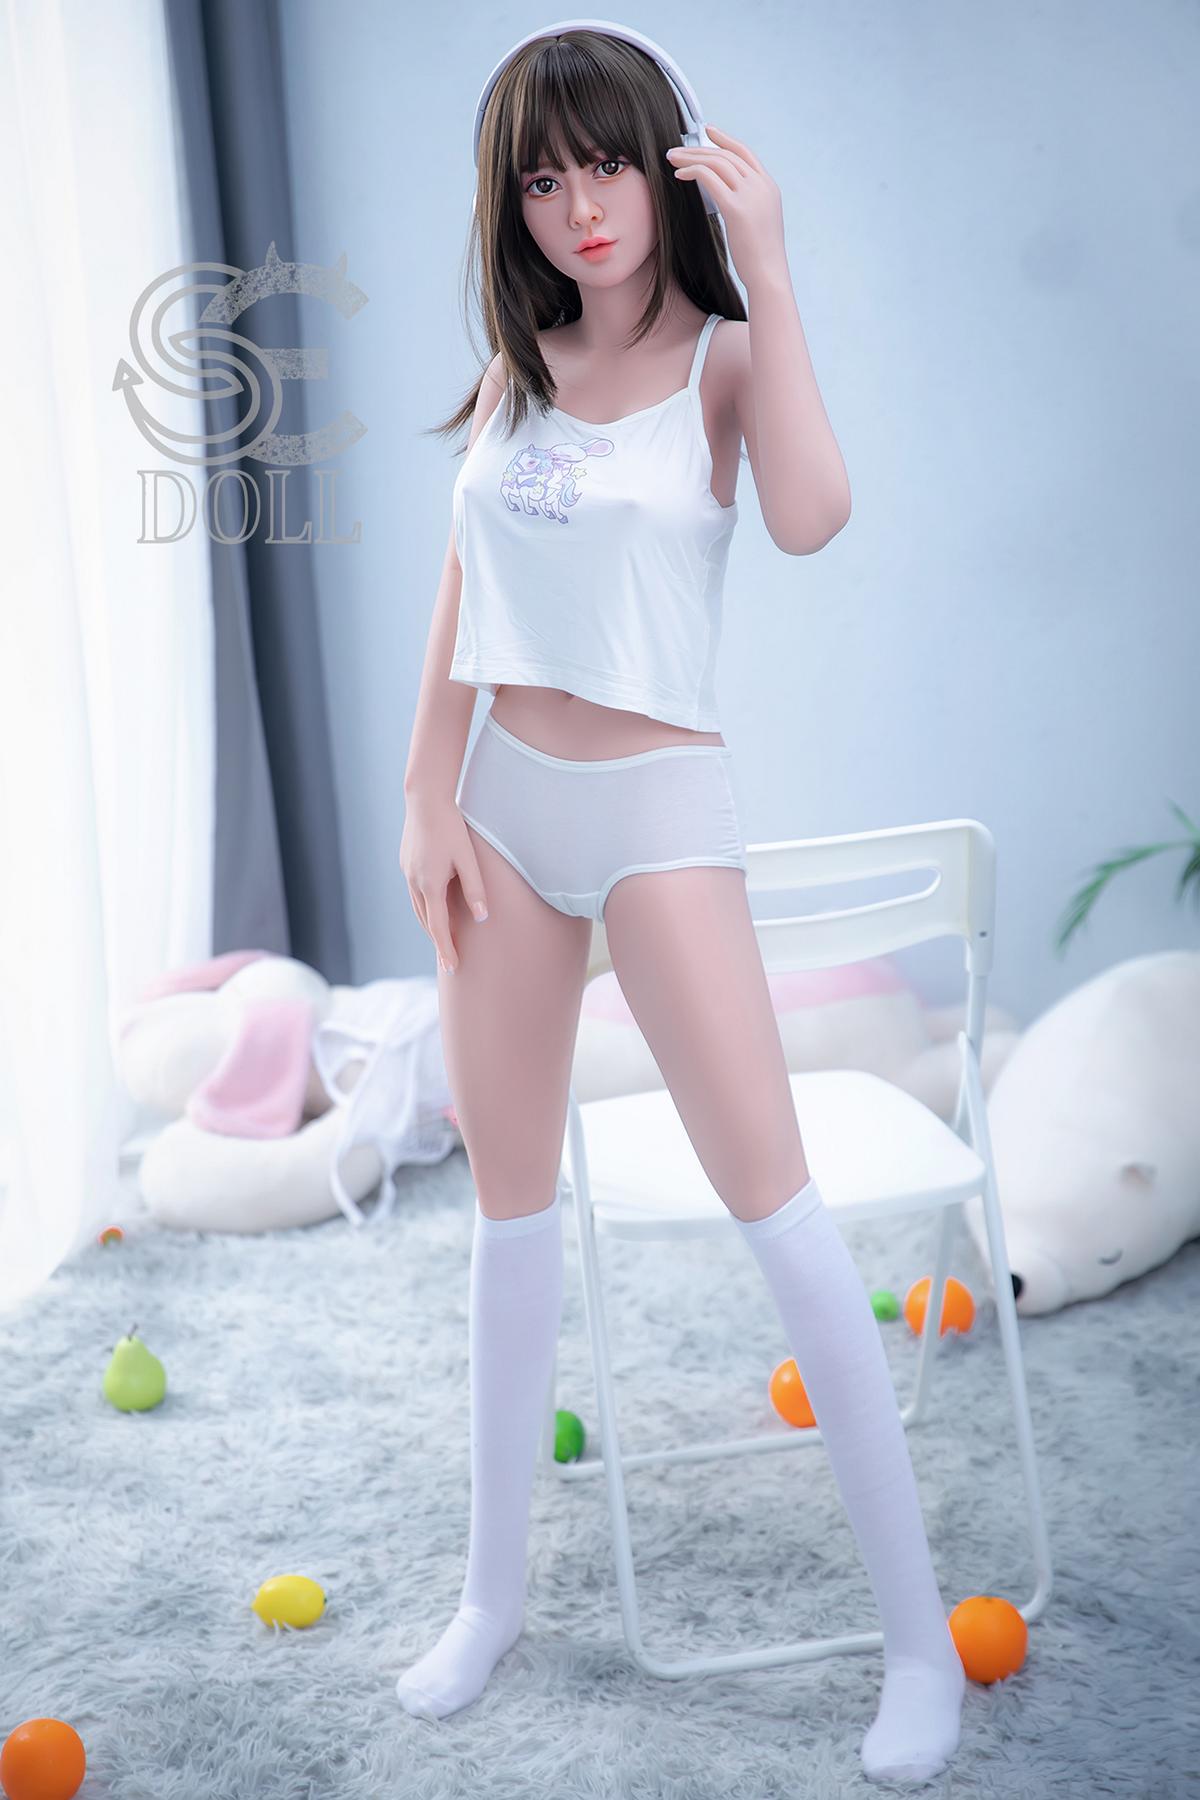 Teen Sex Doll Lija | Cute Asian Love Doll